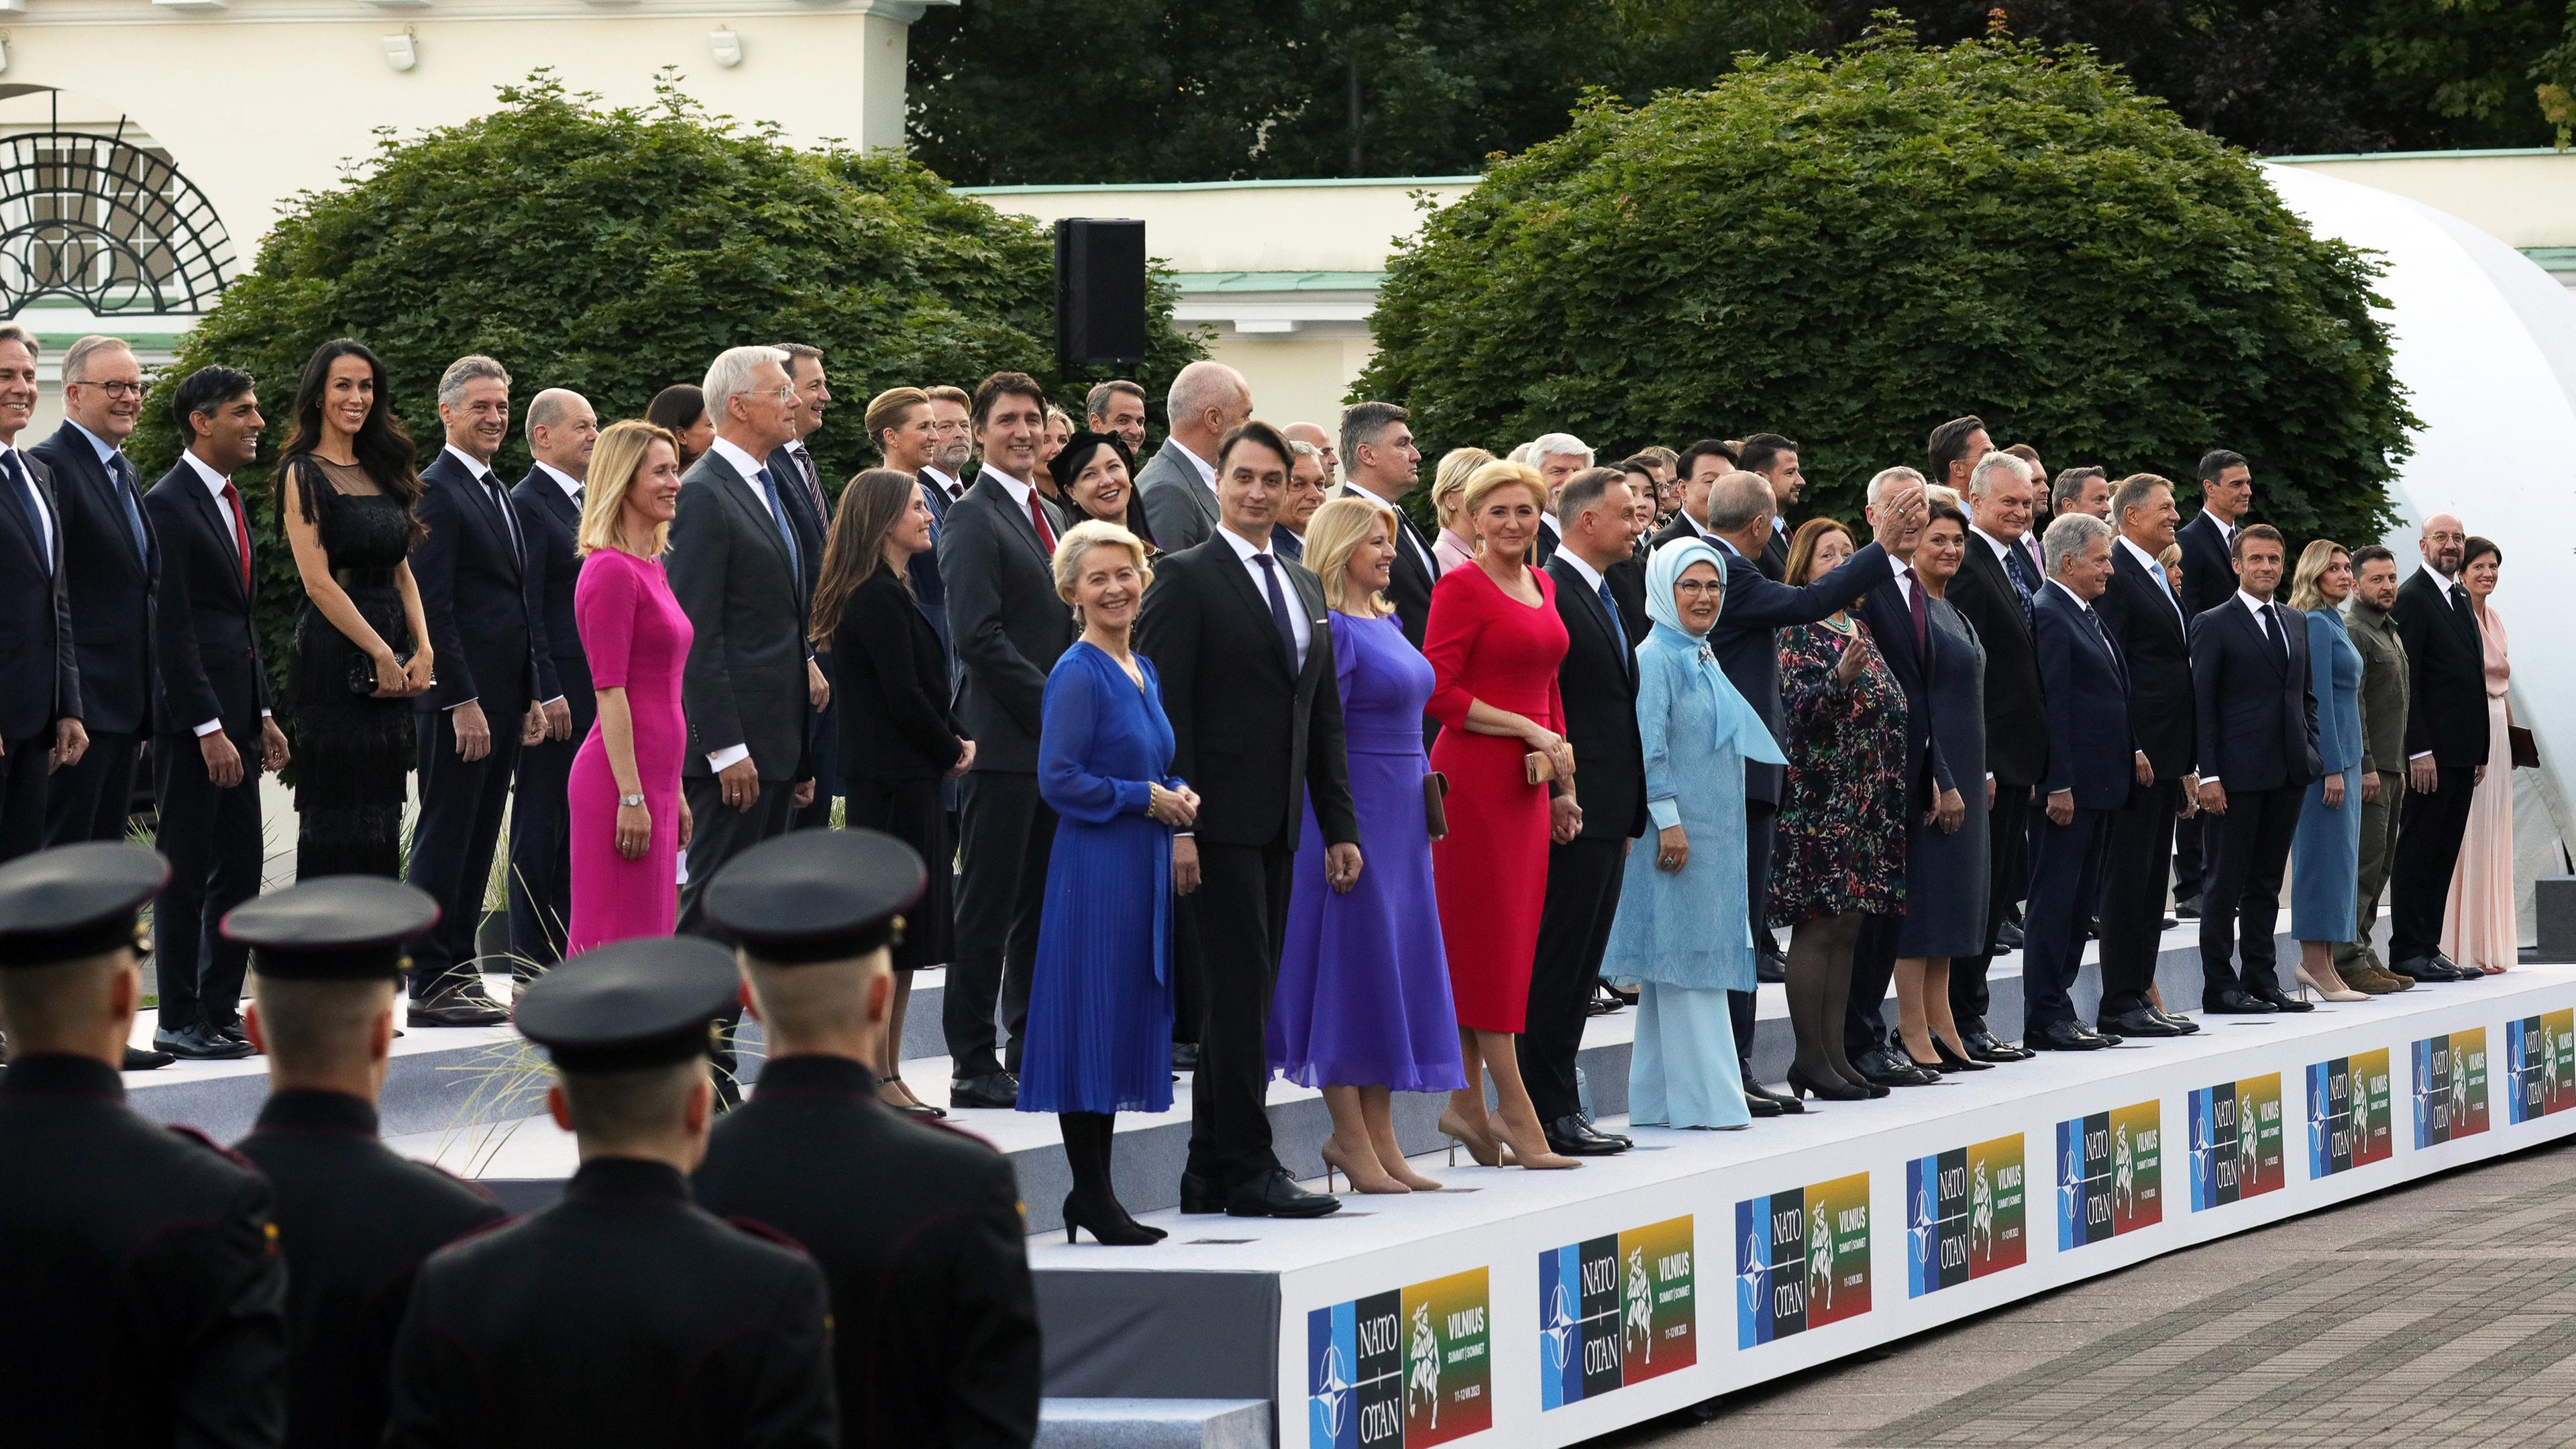 Nato-Gipfel in Vilnius